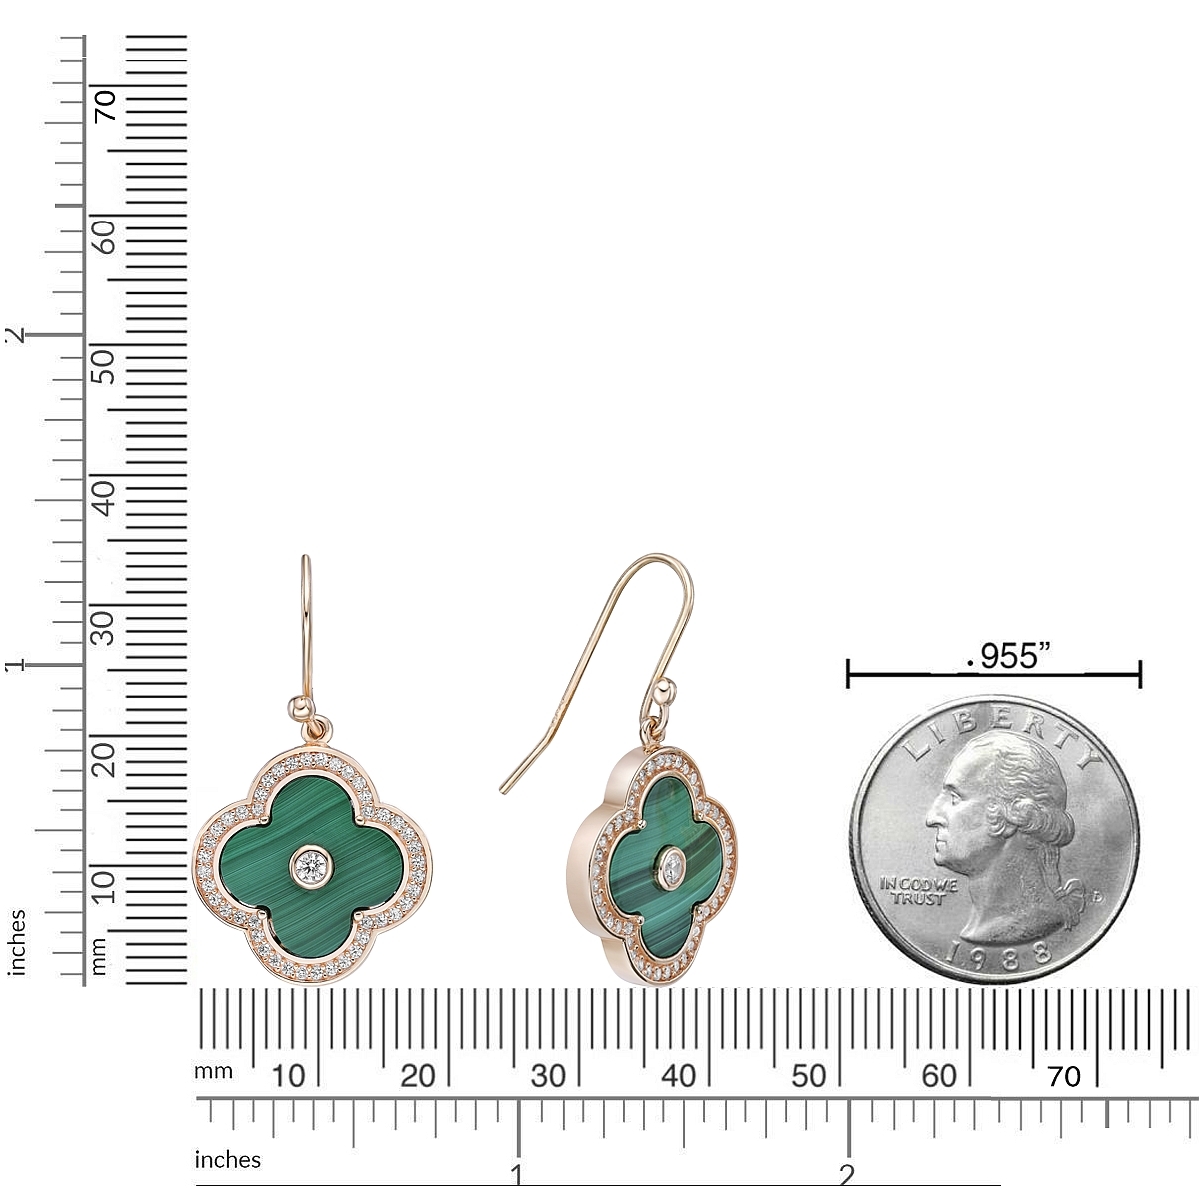 50815-earrings-fashion-jewelry-sterling-silver-.jpg